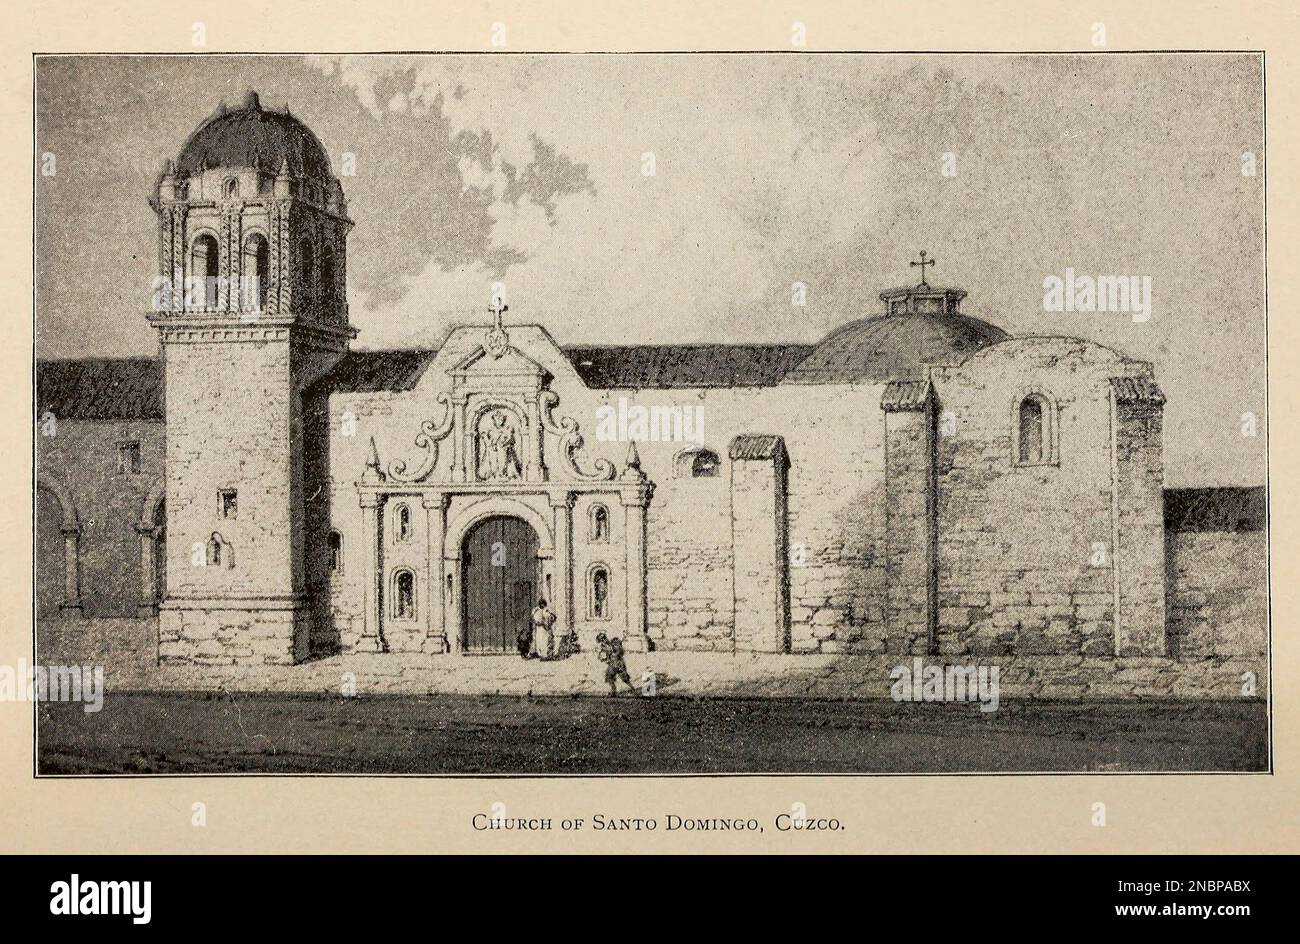 Eglise de Santa Domingo, Cuzco d'après le livre « A history of Peru by Sir Clements Robert Markham, Editeur Chicago : C. H. Sergel and Company Date de publication 1892 Banque D'Images